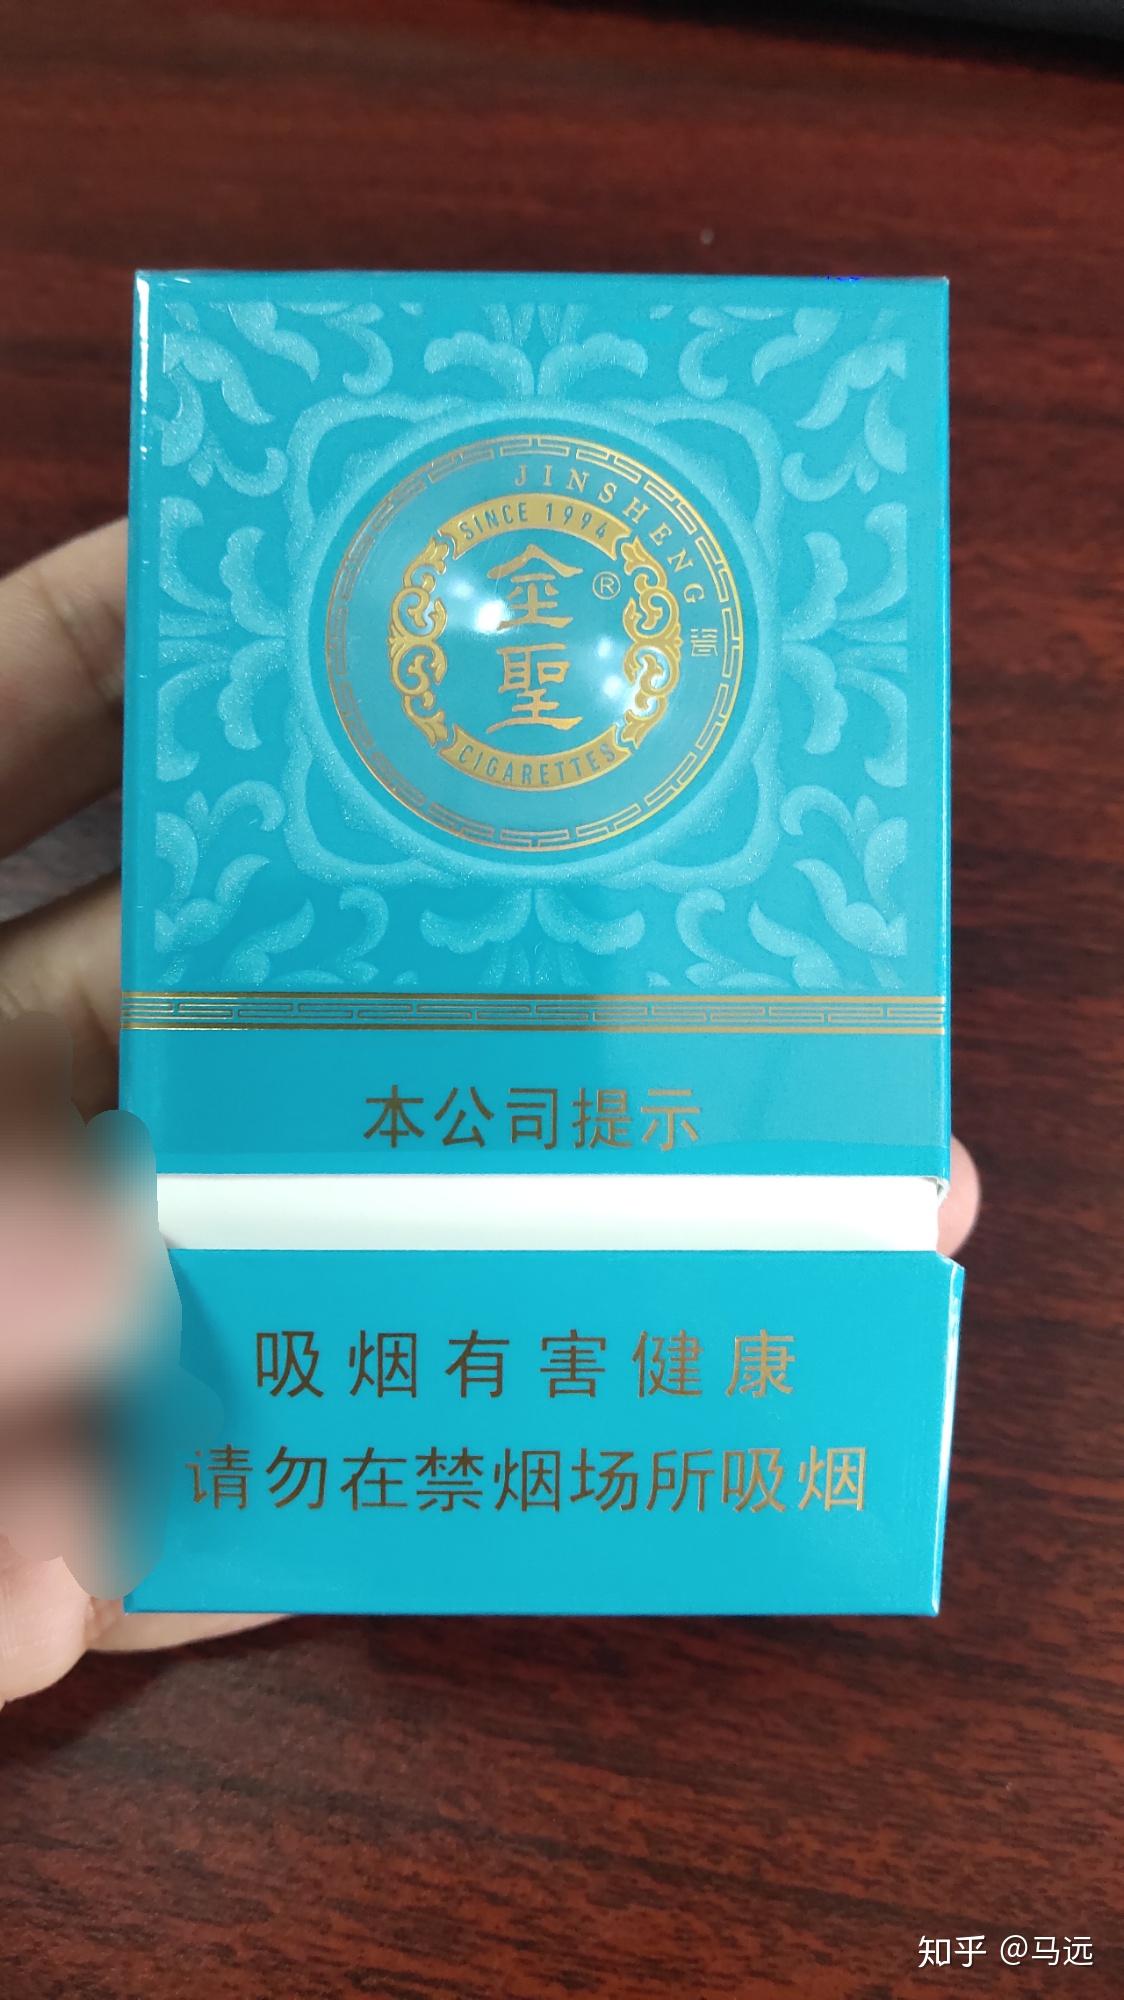 江西金圣香烟浅蓝色盒子中间是金色圆形logo正反面是浅蓝色像青花瓷